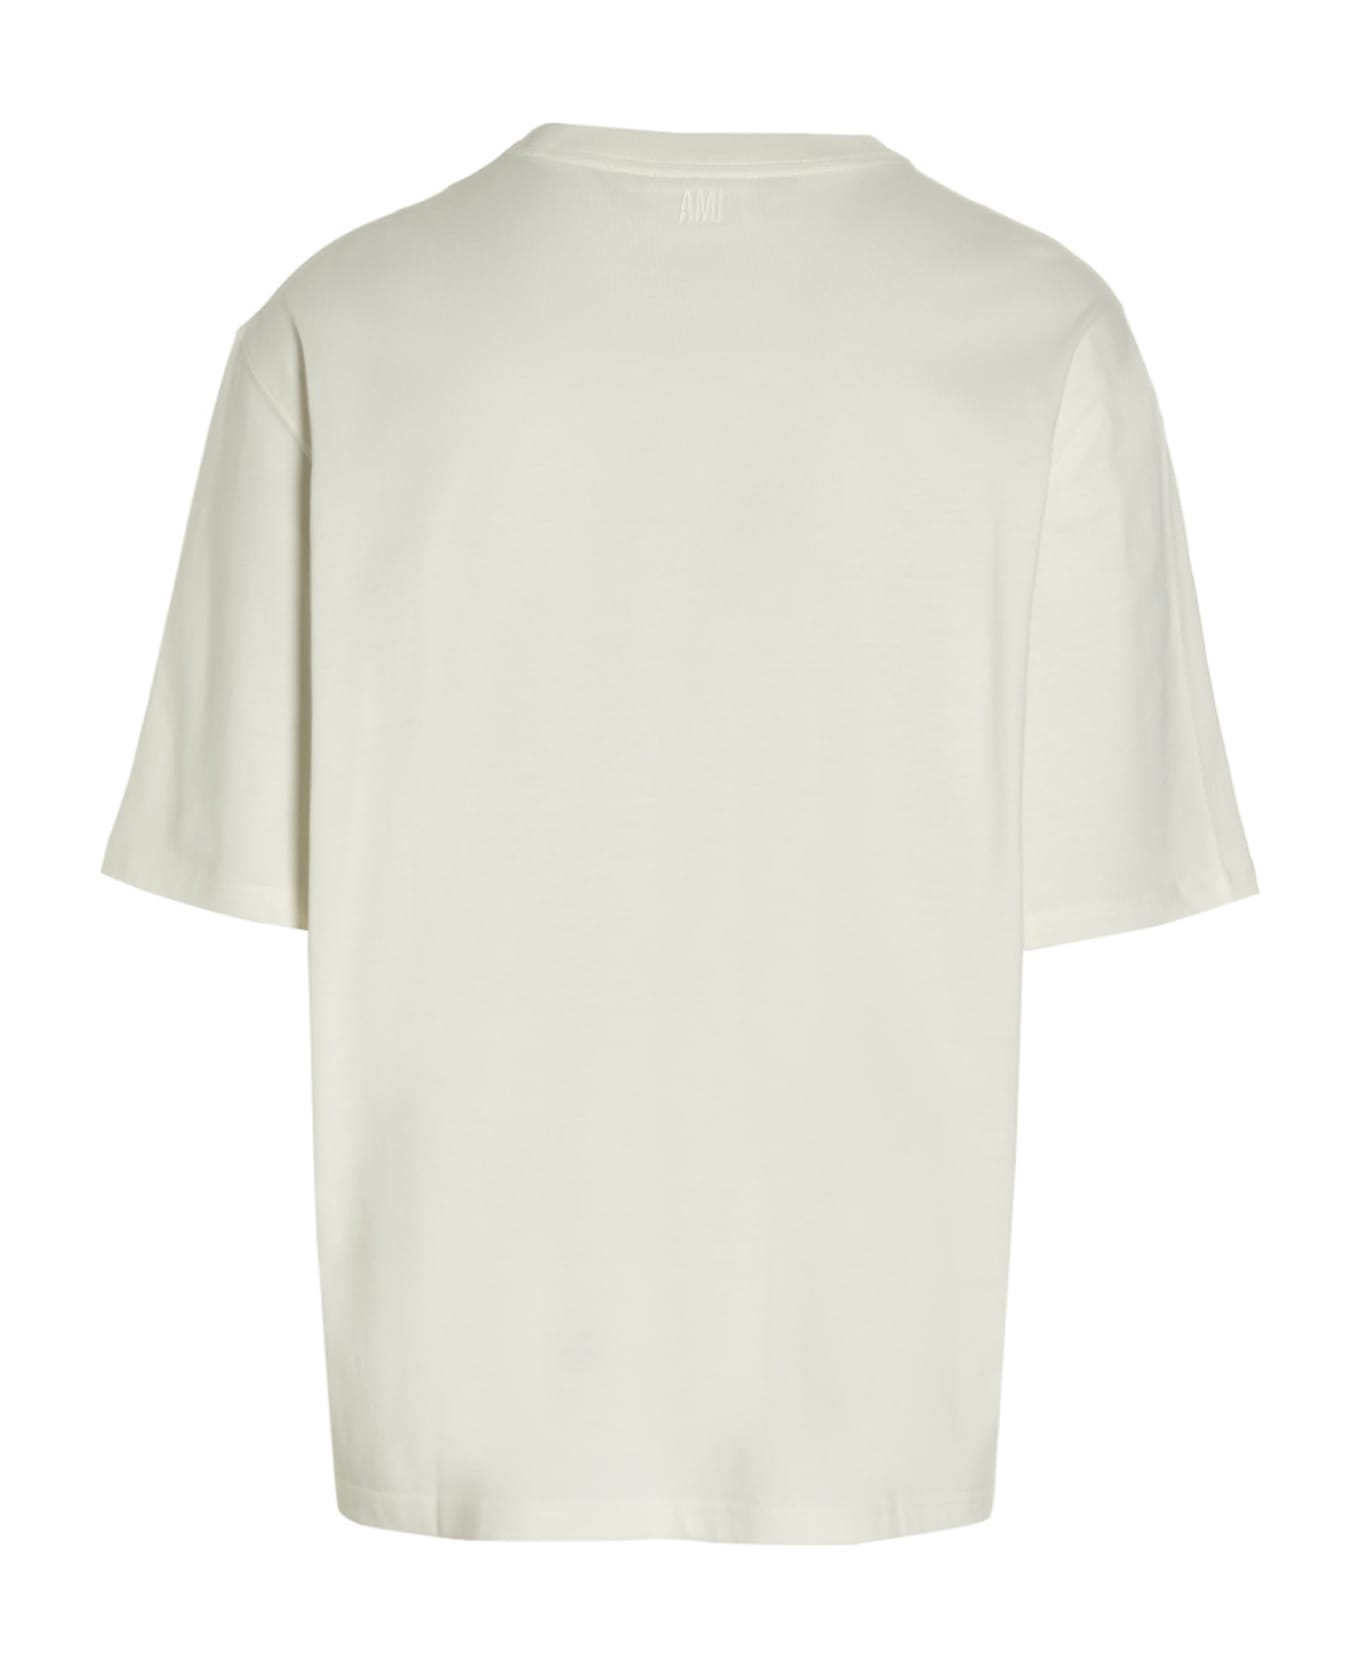 Ami Alexandre Mattiussi 'adc' T-shirt - White Red Tシャツ